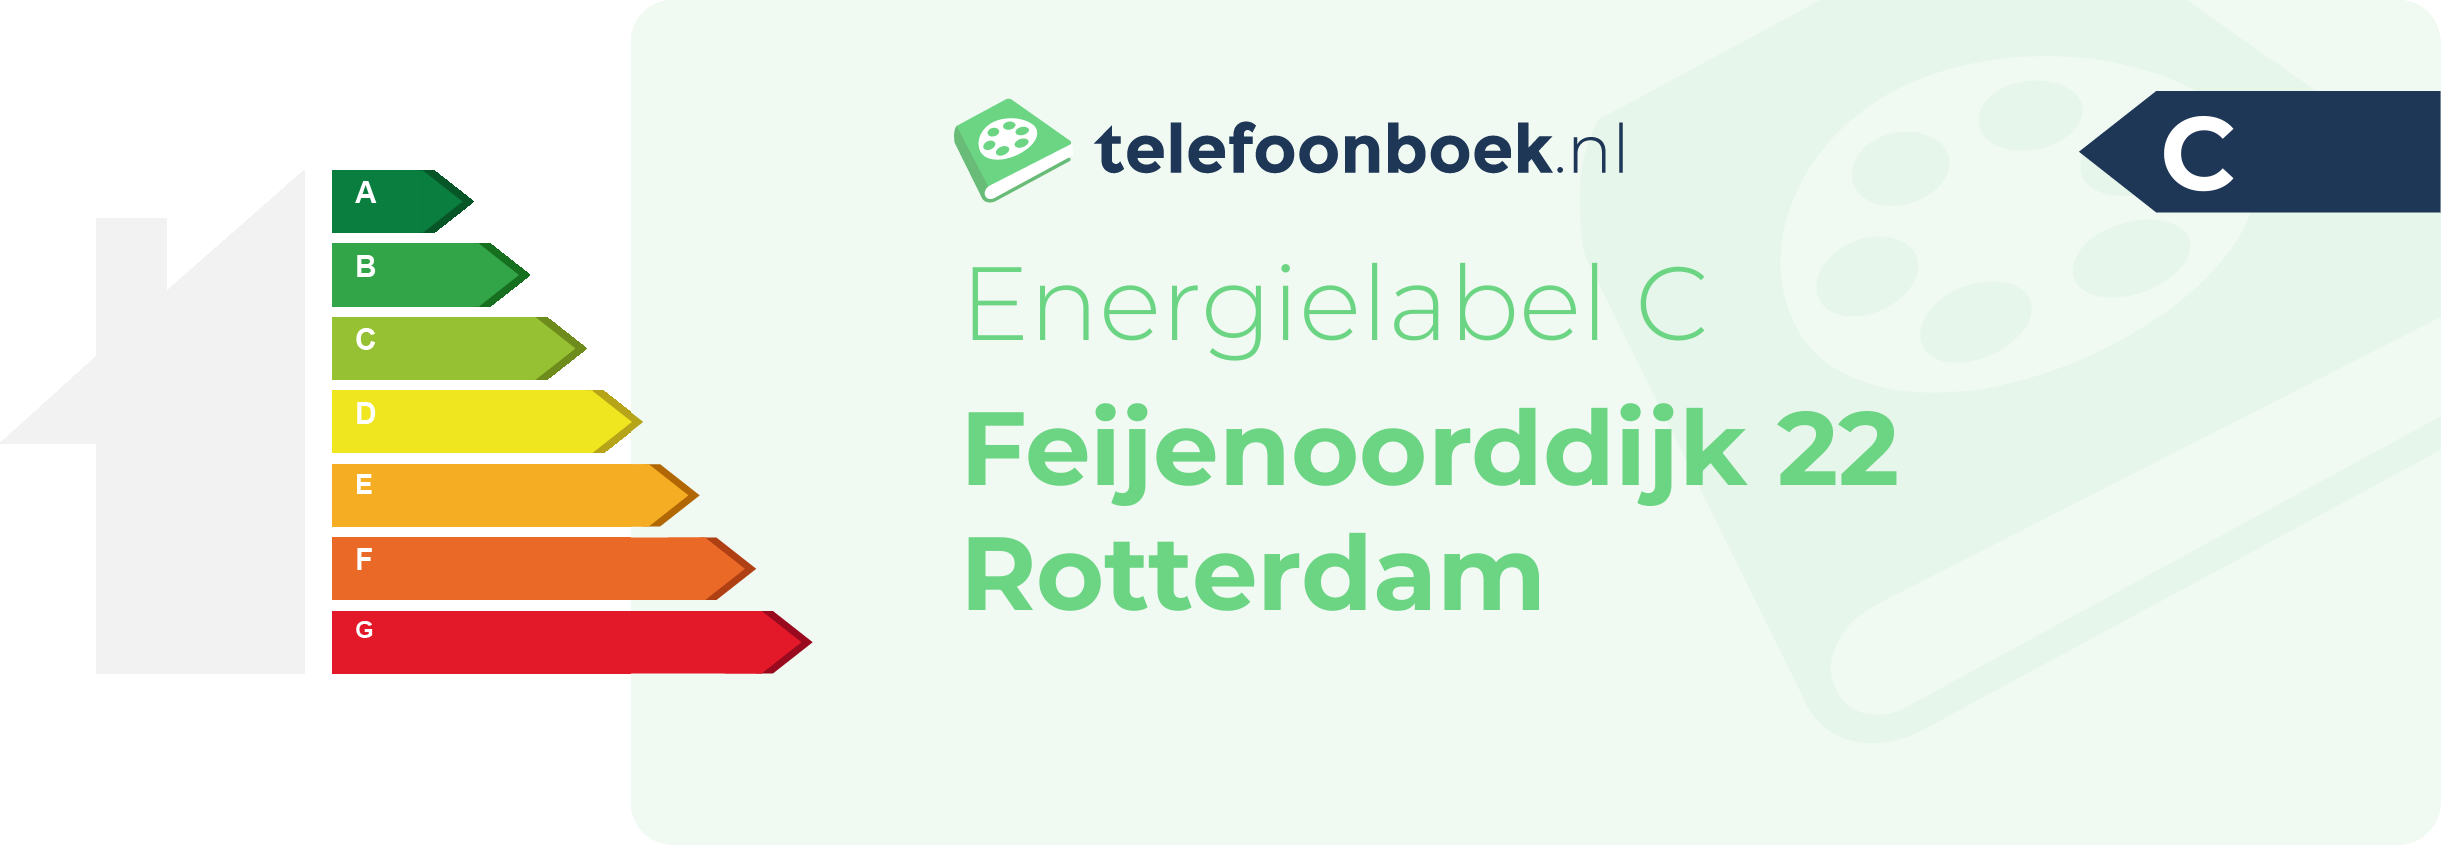 Energielabel Feijenoorddijk 22 Rotterdam